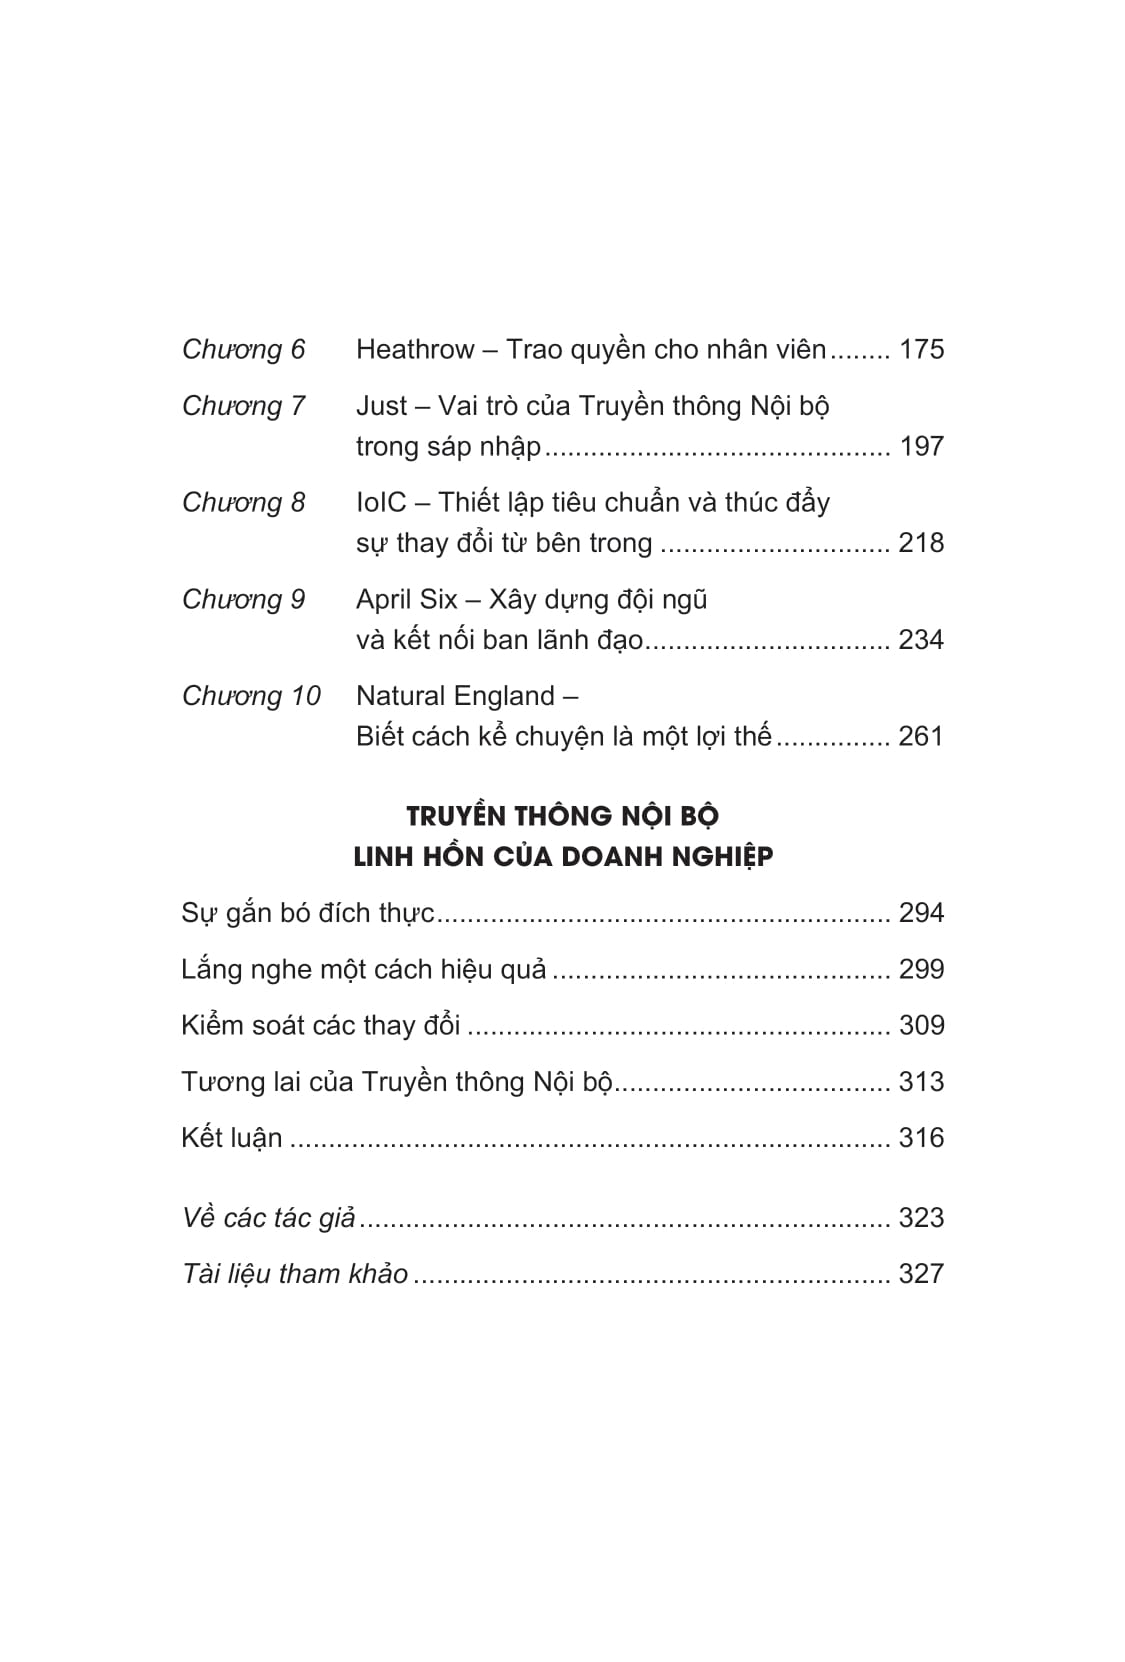 Truyền Thông Nội Bộ: Linh Hồn Của Doanh Nghiệp PDF